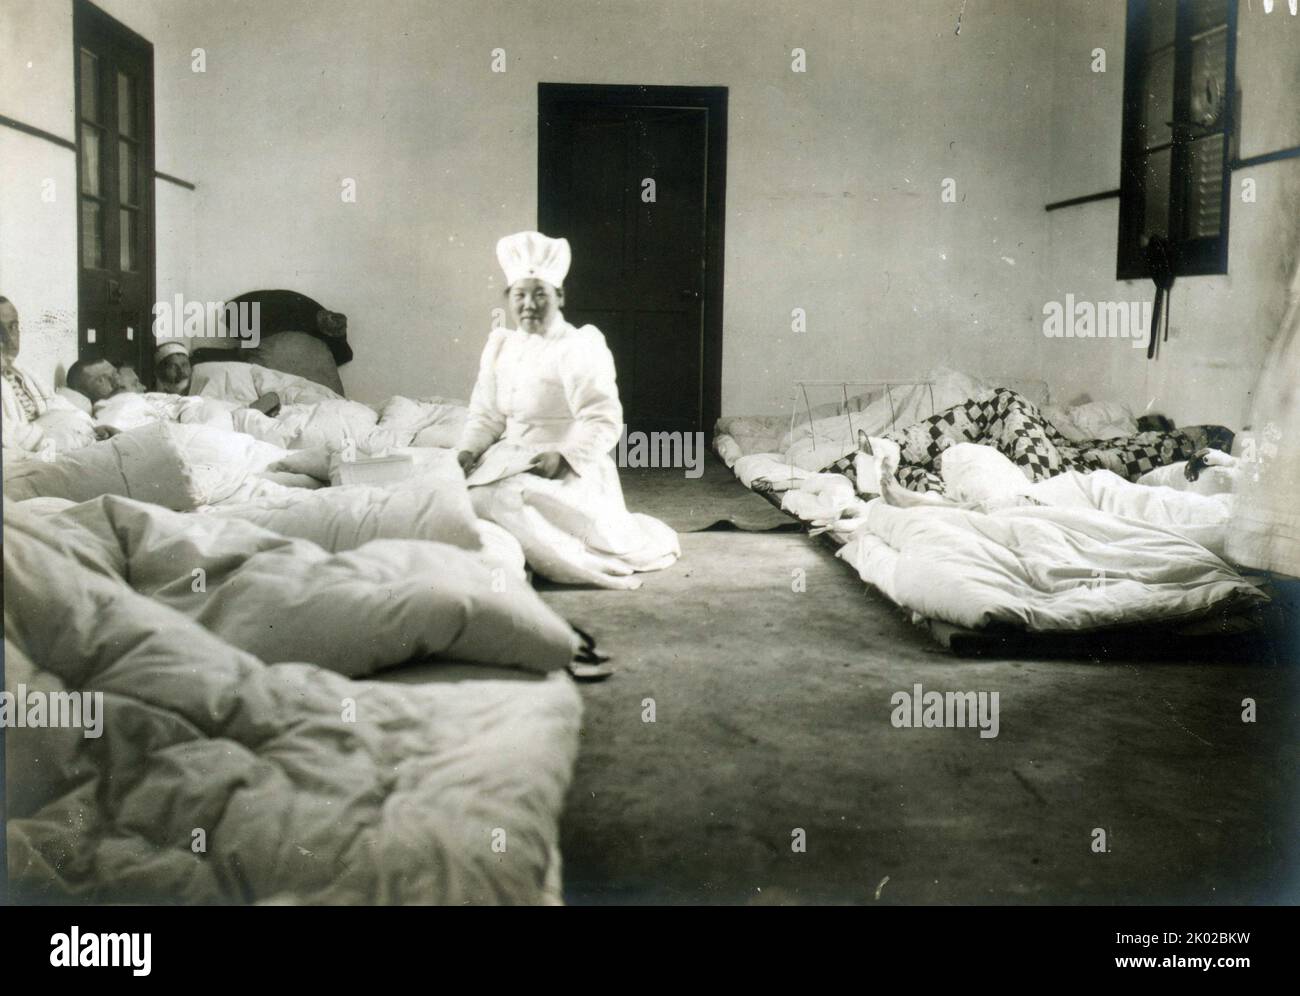 Japanische Krankenschwestern des Roten Kreuzes in Chemulpo, Korea, nahmen an russischen Soldaten Teil, die im Russisch-Japanischen Krieg 1904 verwundet wurden Stockfoto